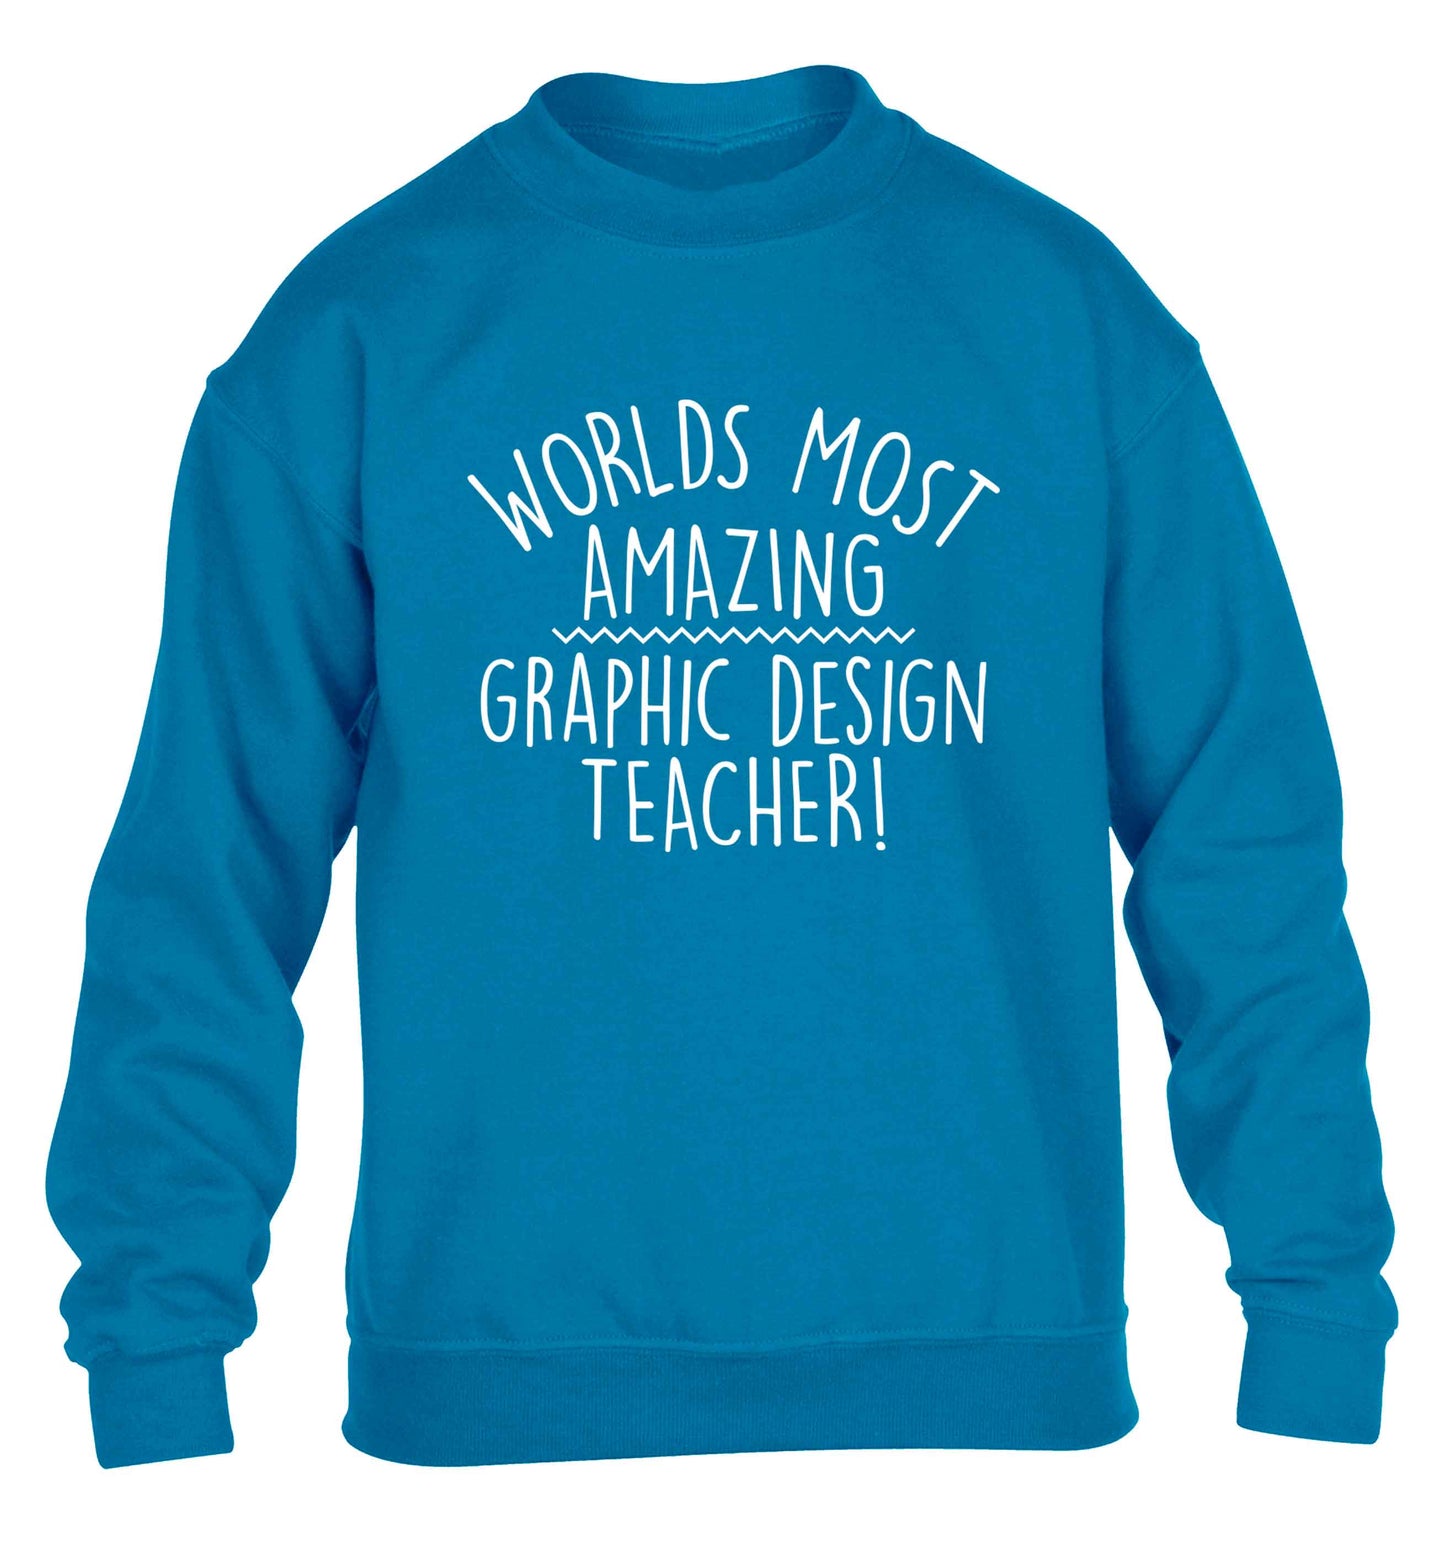 Worlds most amazing graphic design teacher children's blue sweater 12-13 Years